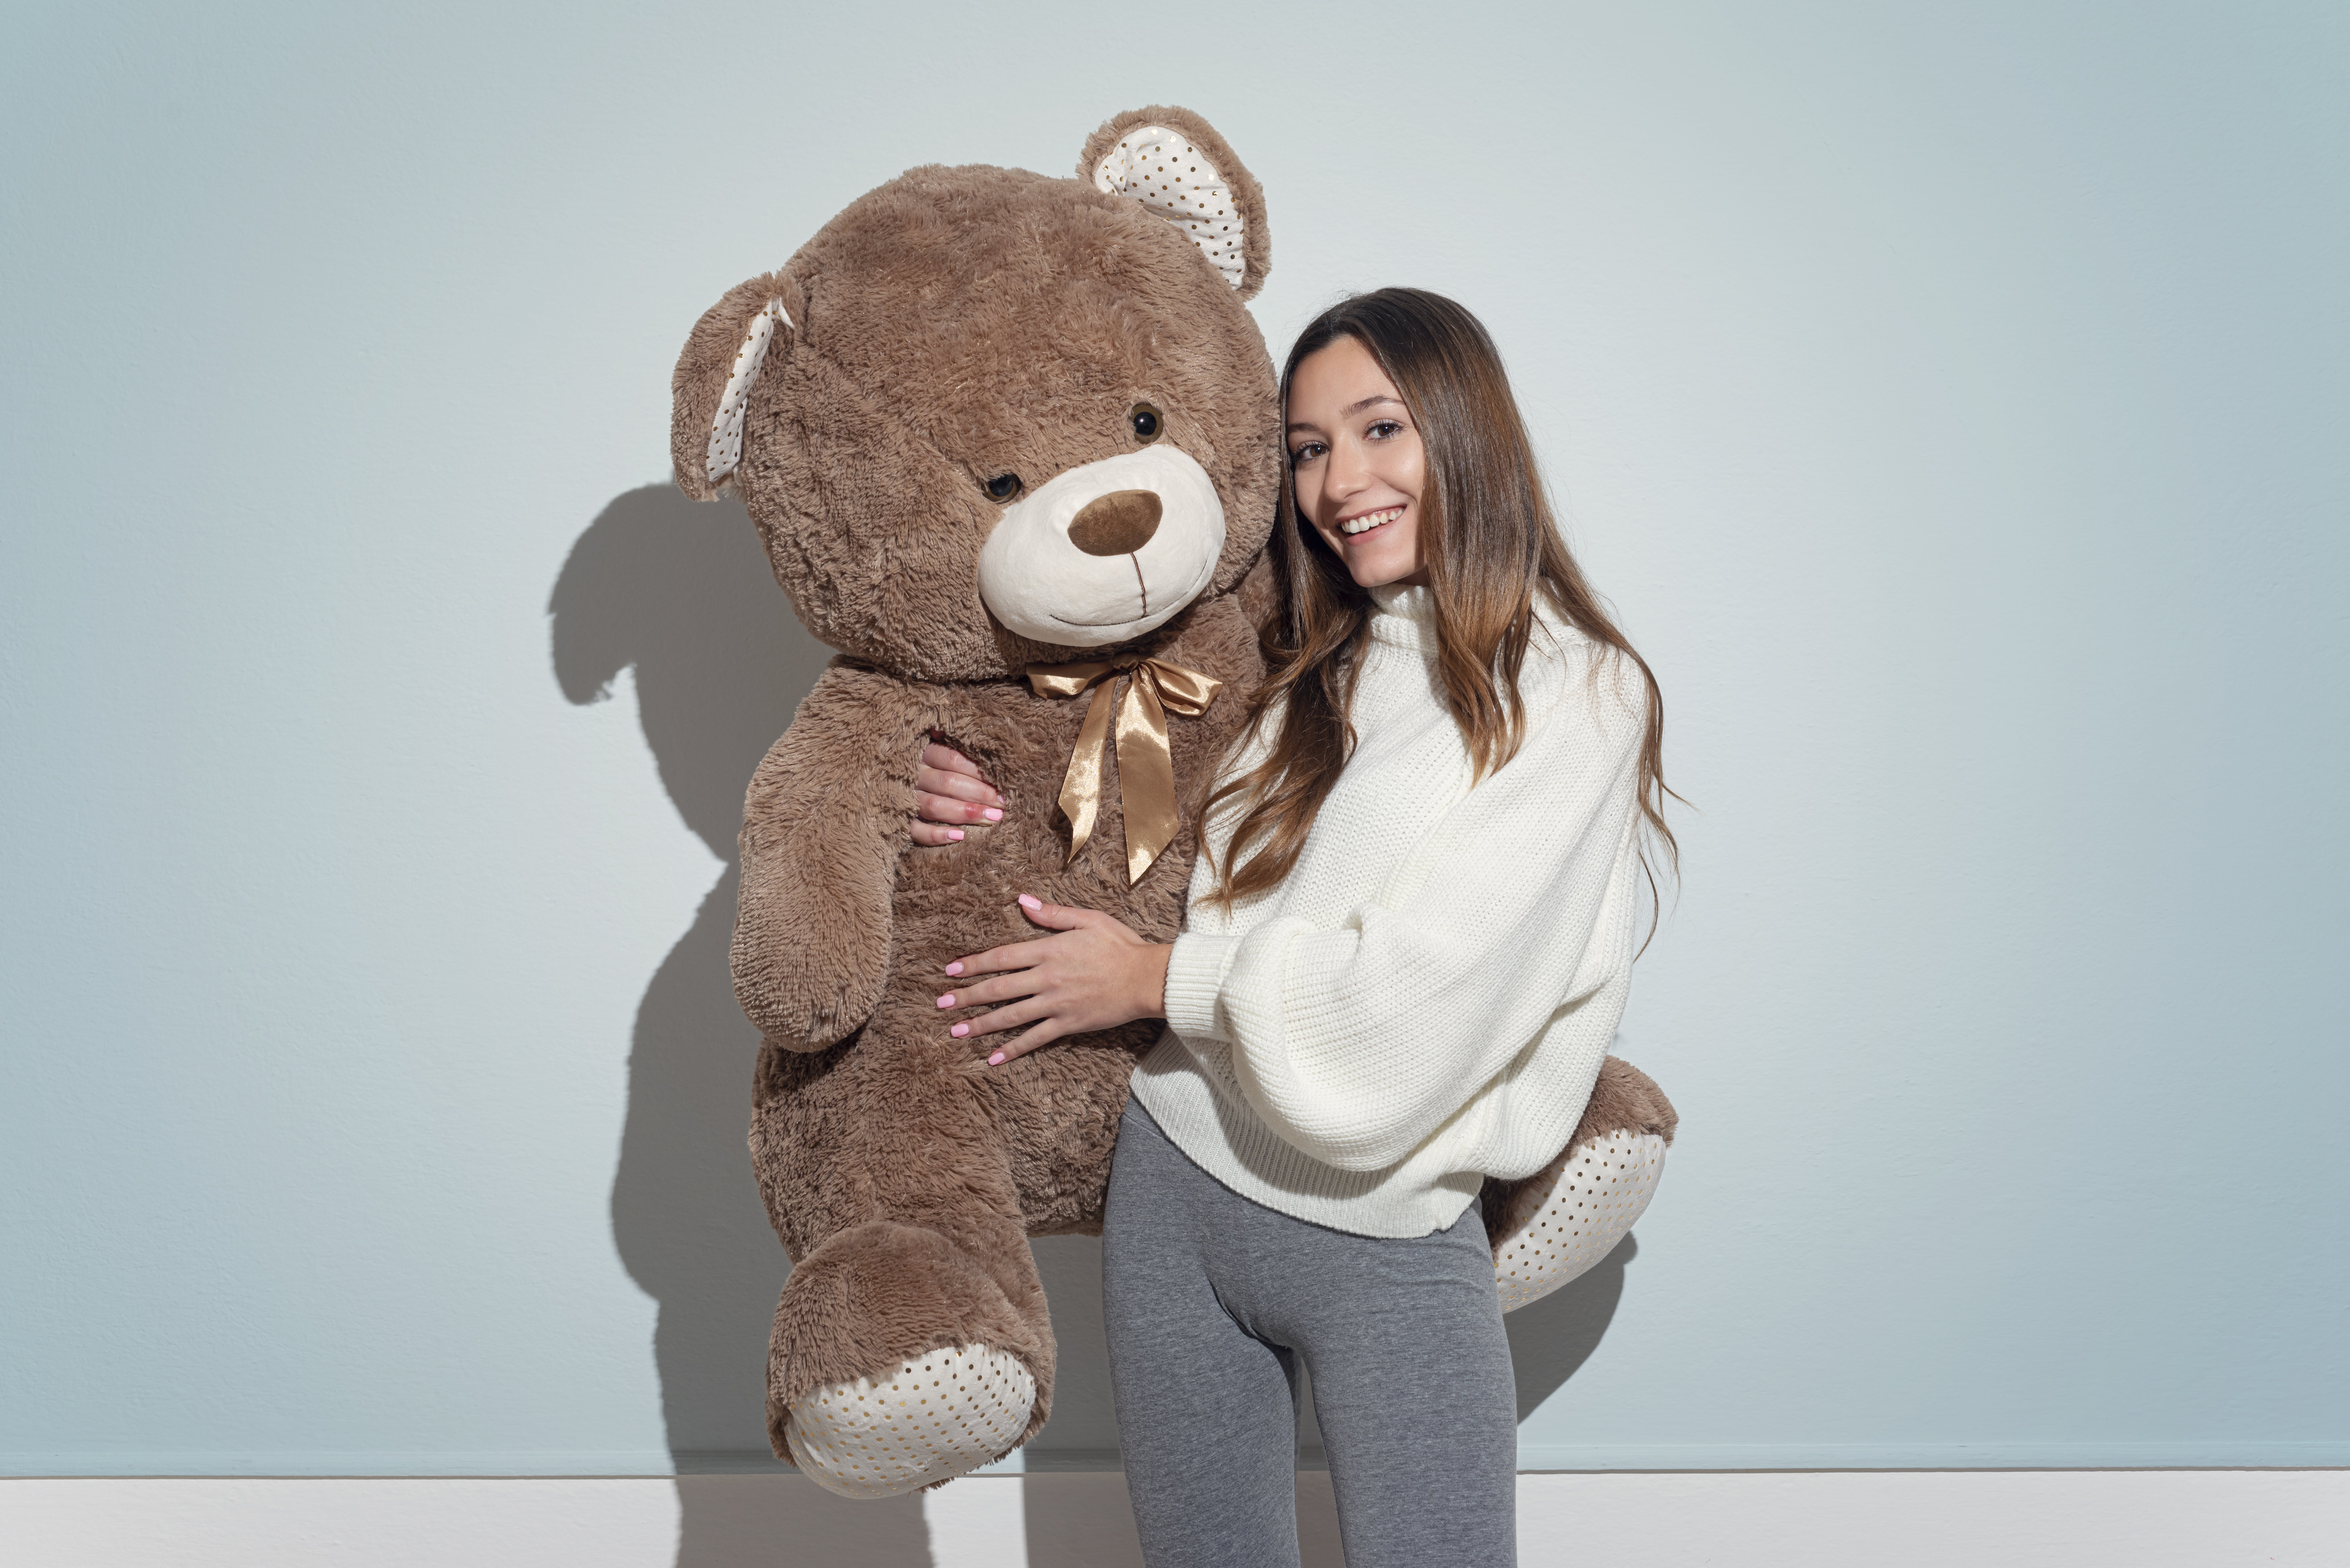 Frau hält einen großen Teddybär | Quelle: Getty Images